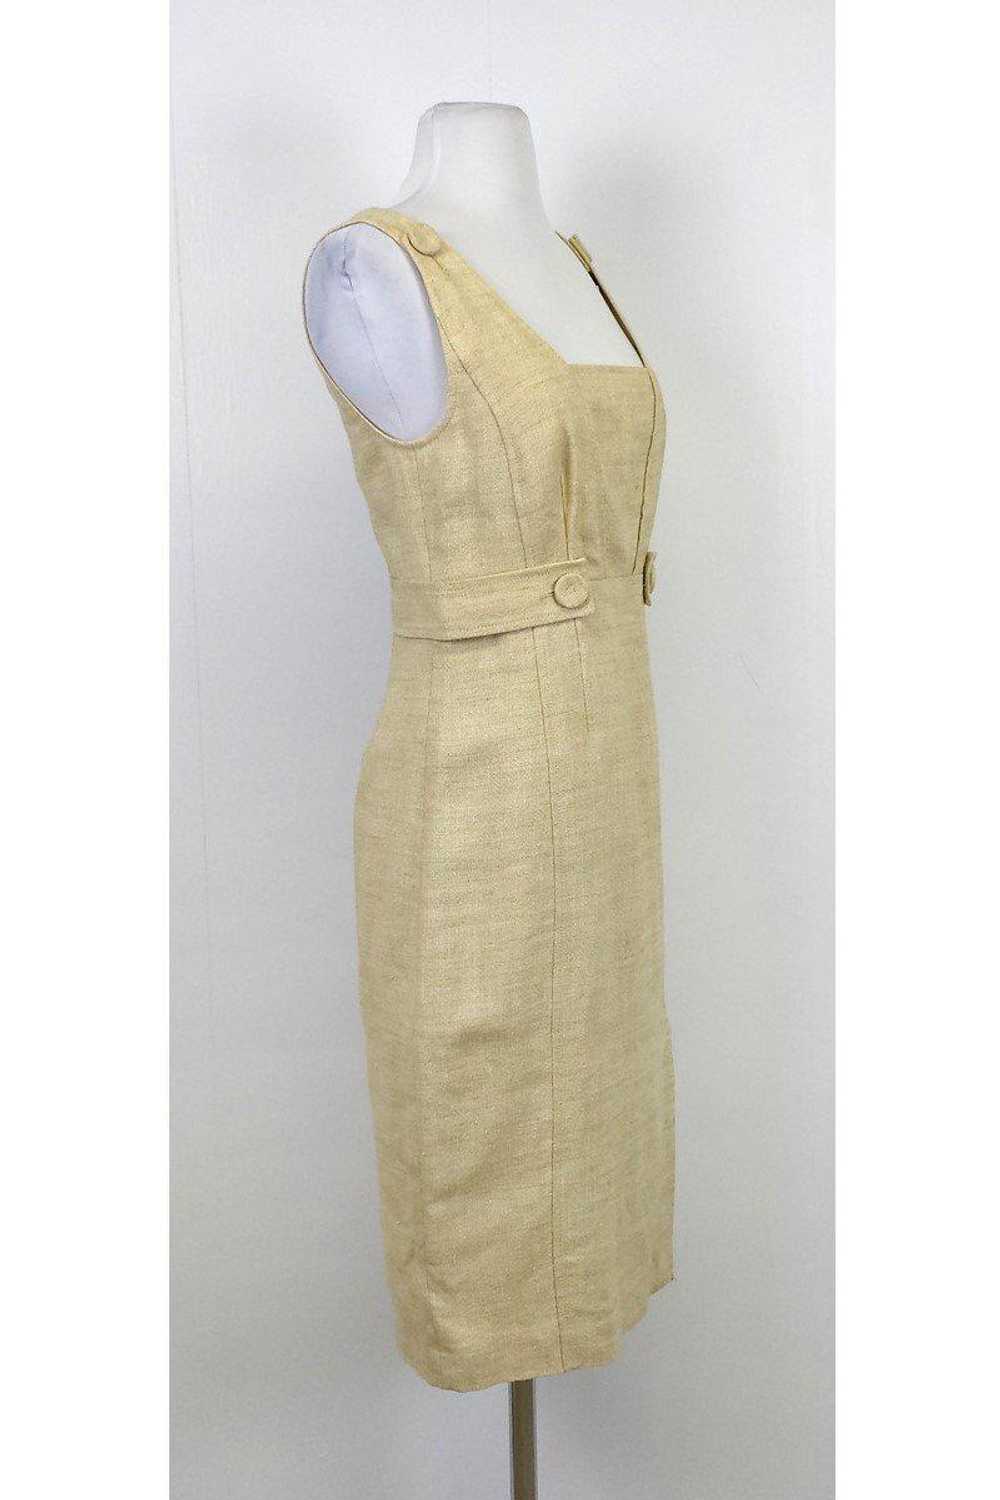 Magaschoni - Beige Linen Sleeveless Dress Sz 4 - image 2